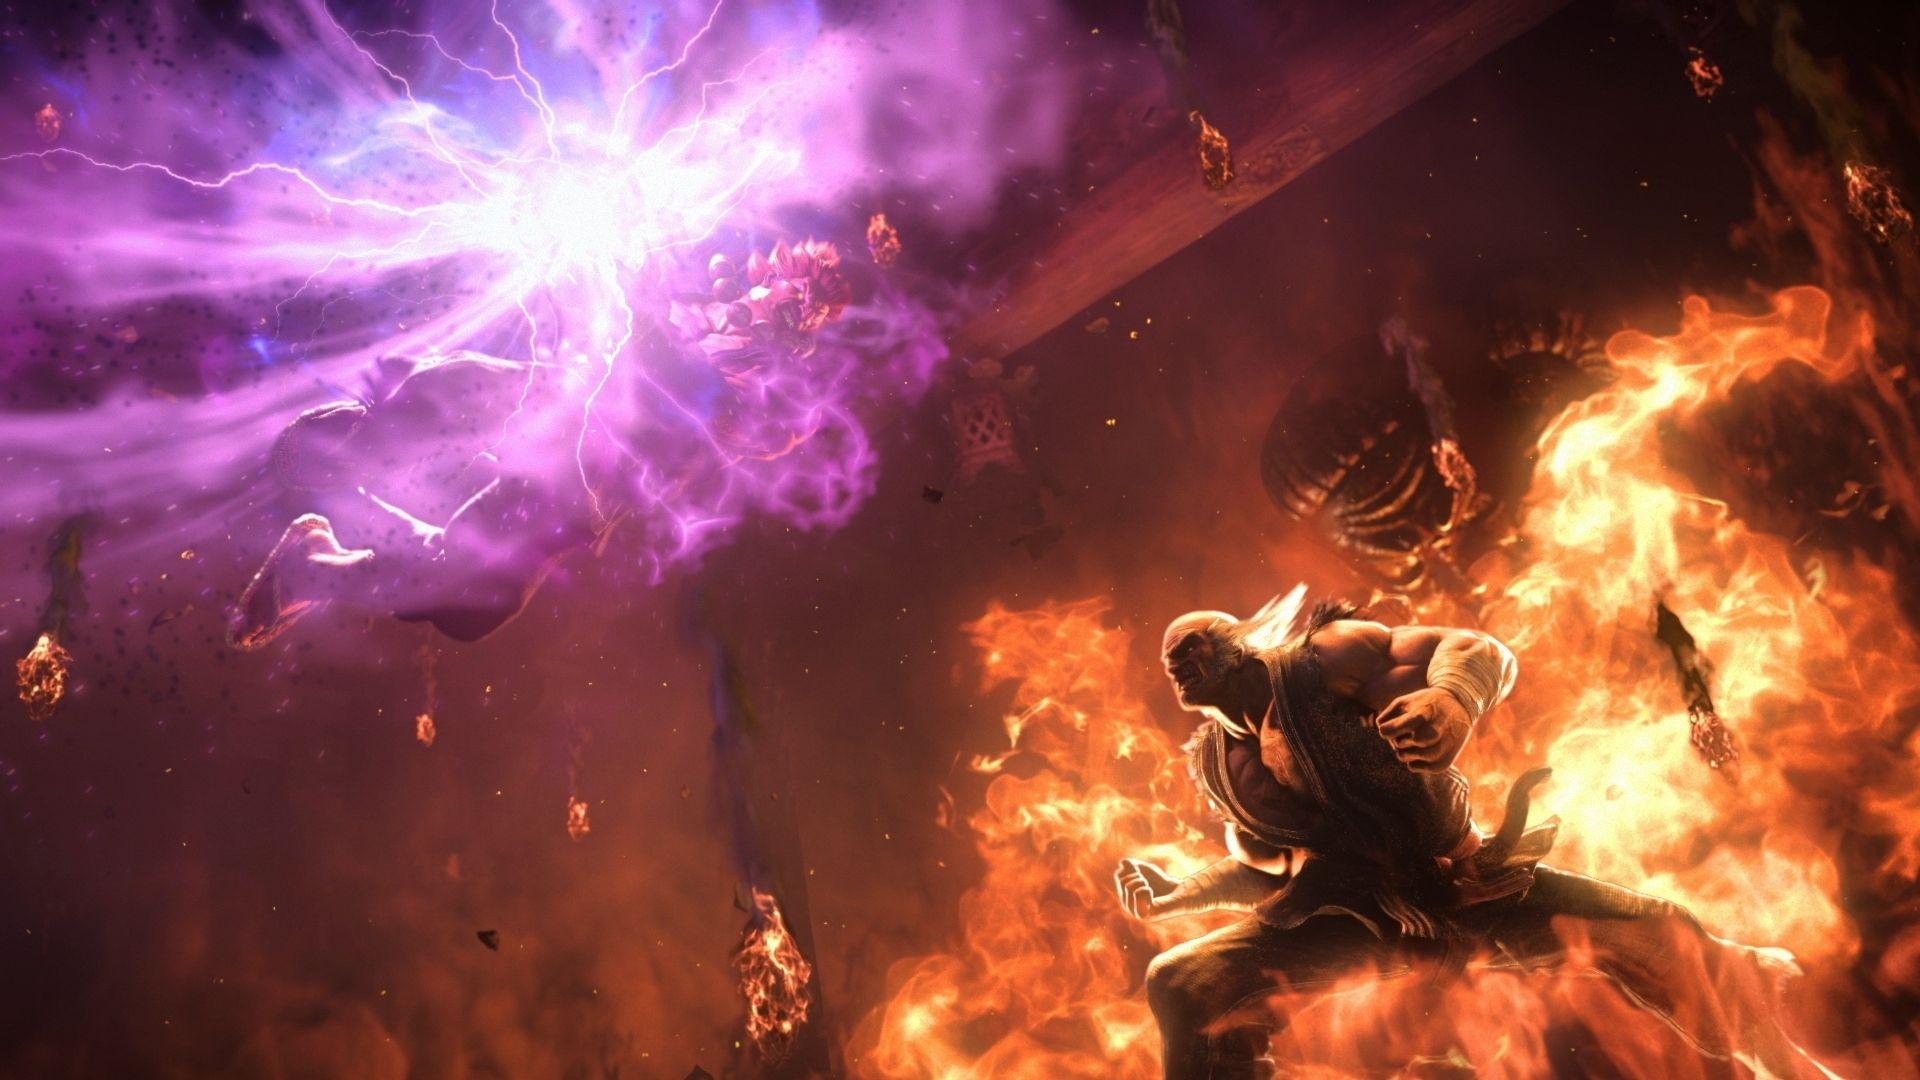 Tekken 7 Wallpaper, Picture, Image